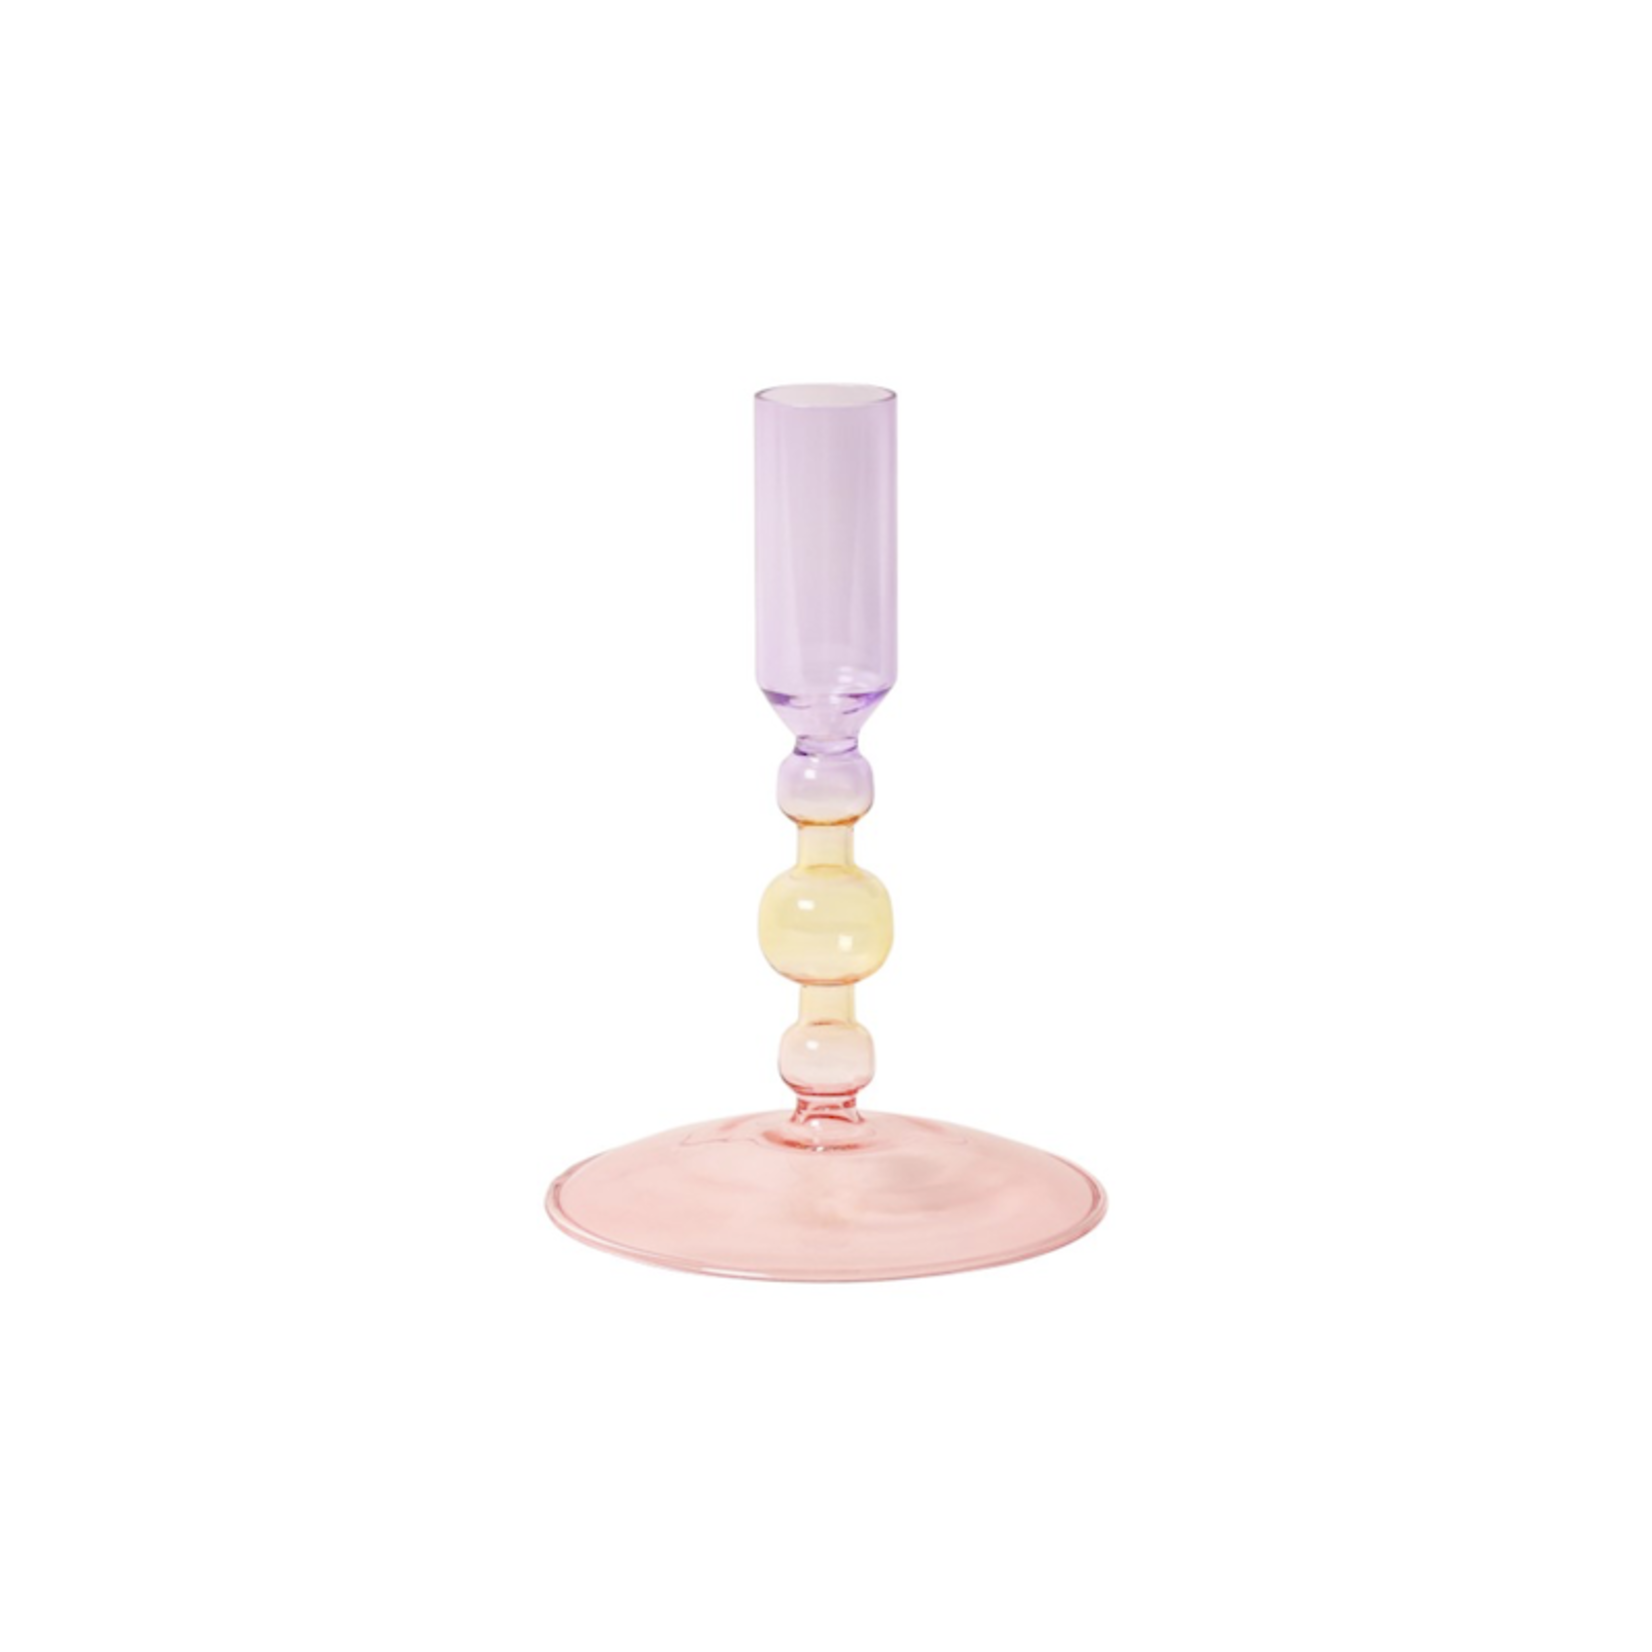 Glazen kandelaar - roze/geel/paars - S